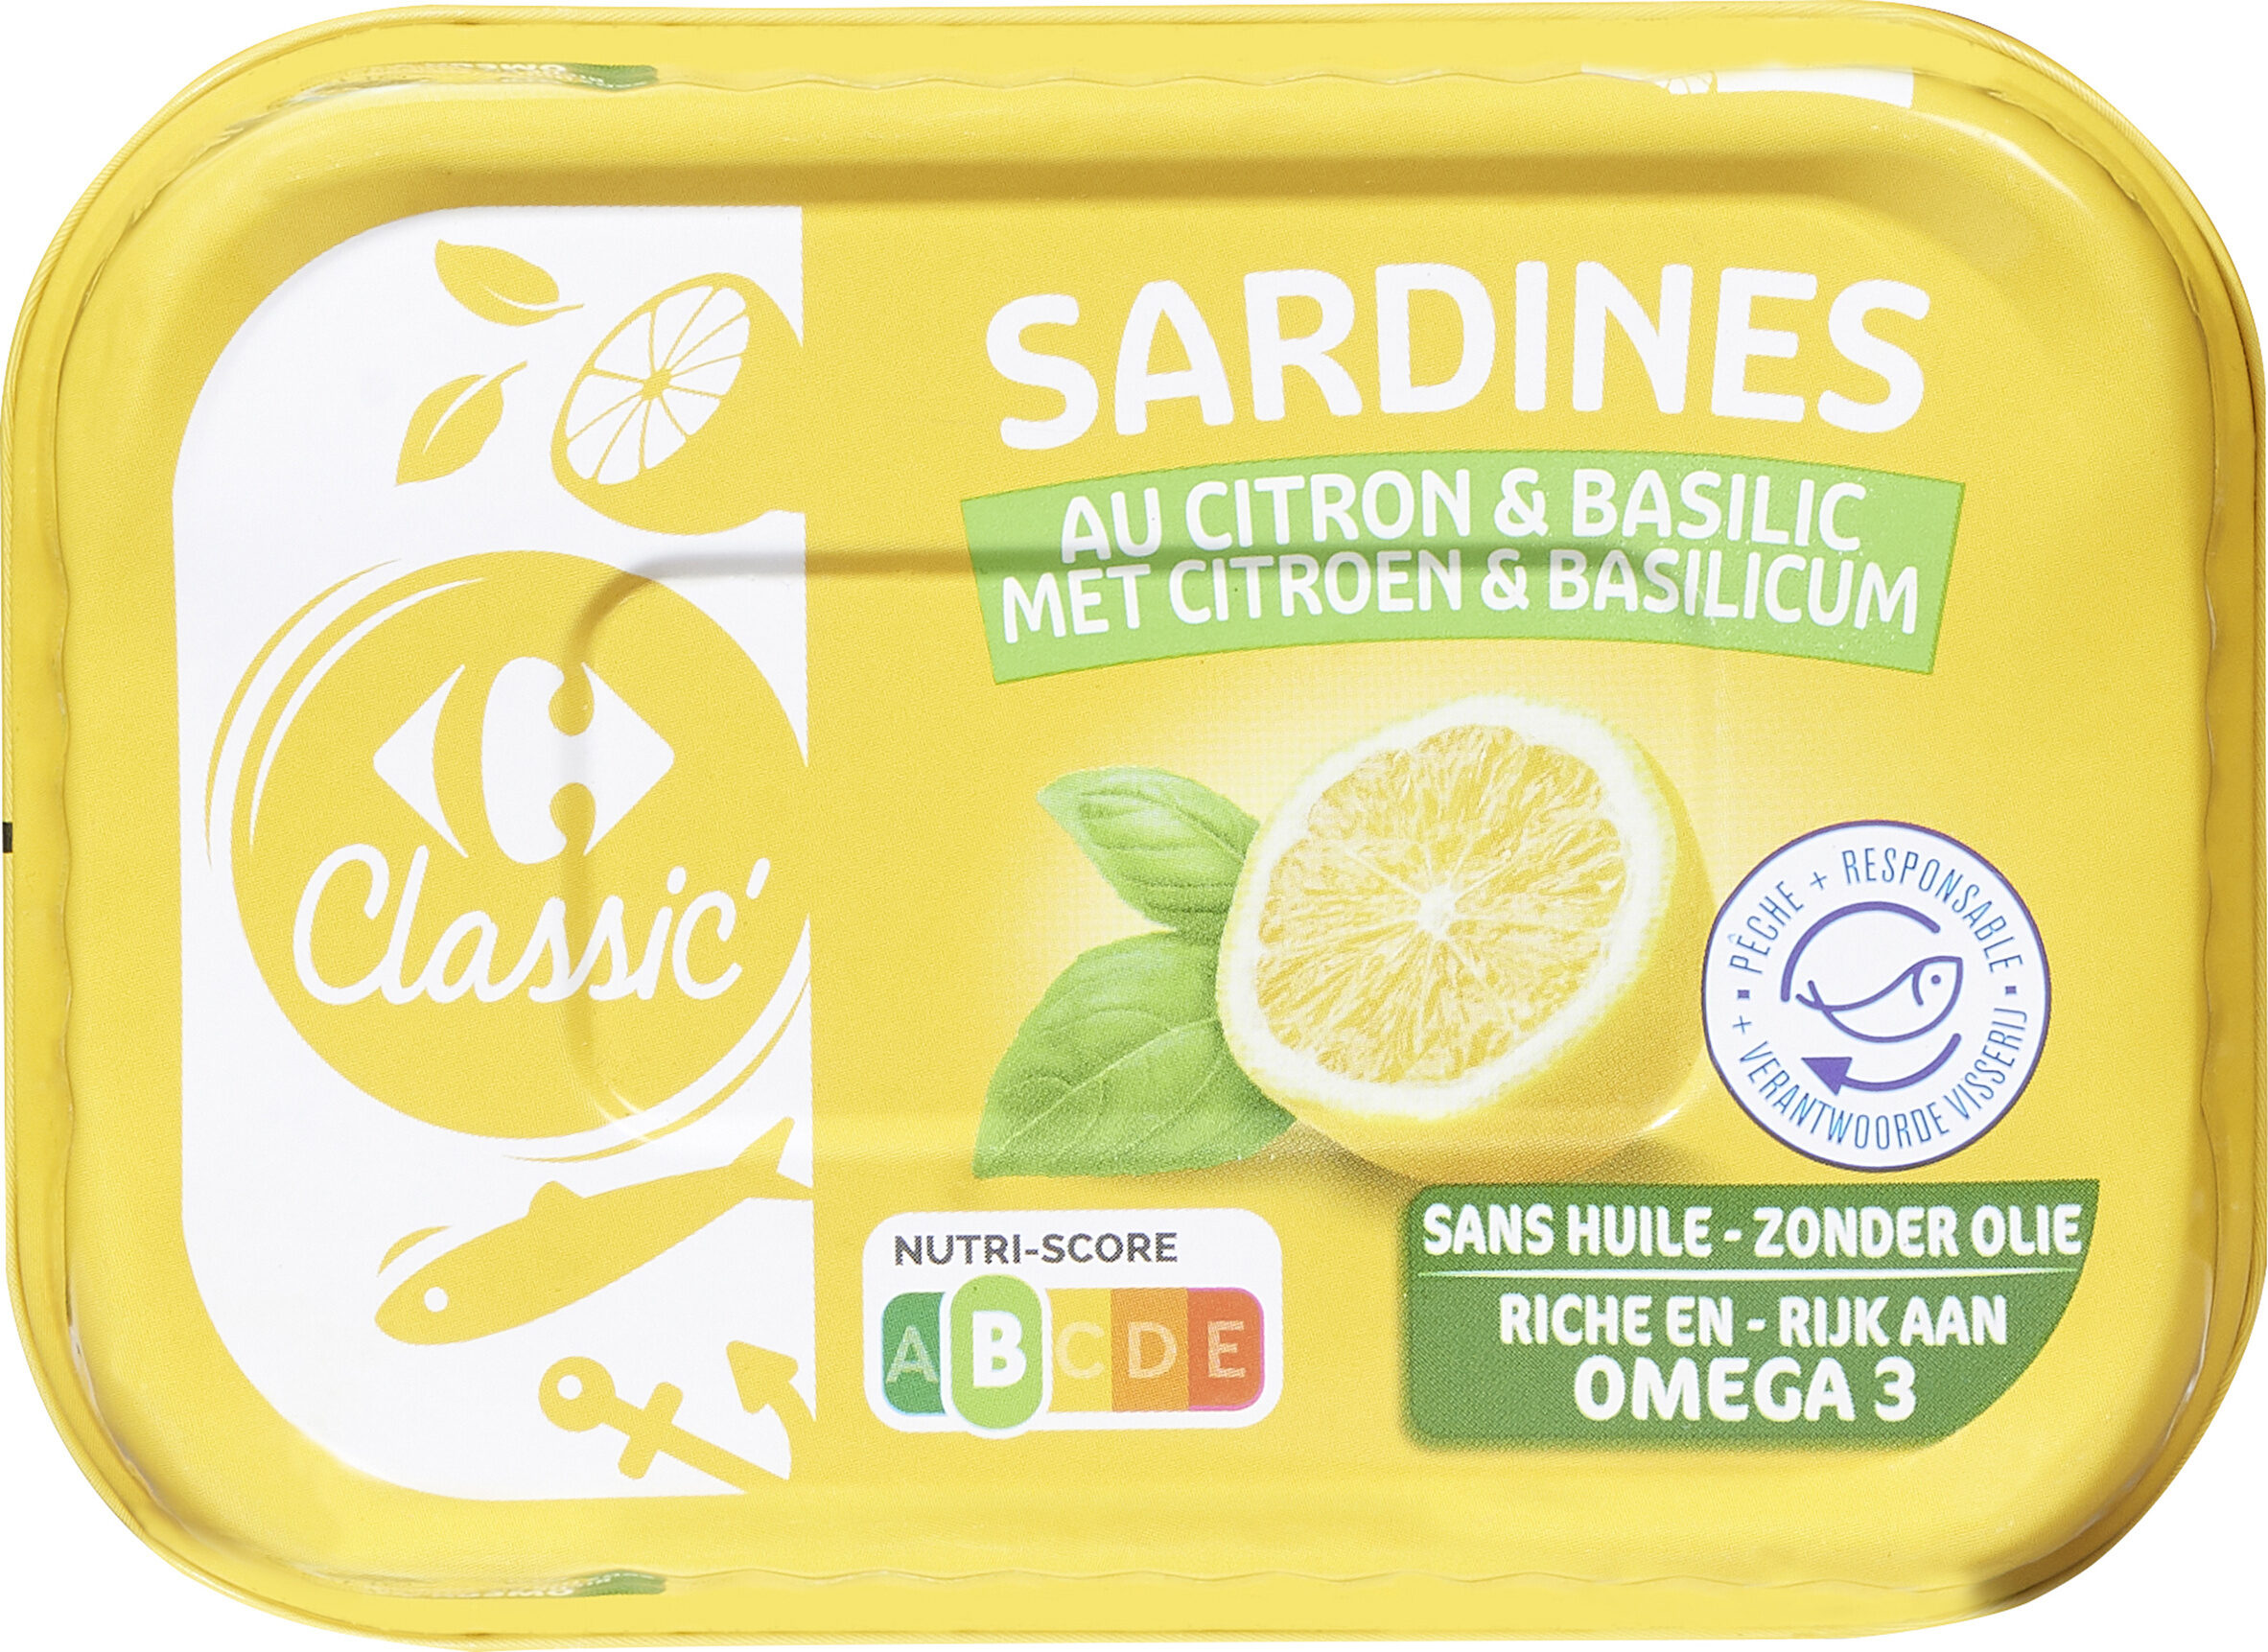 Sardines au citron & basilic - Producto - fr